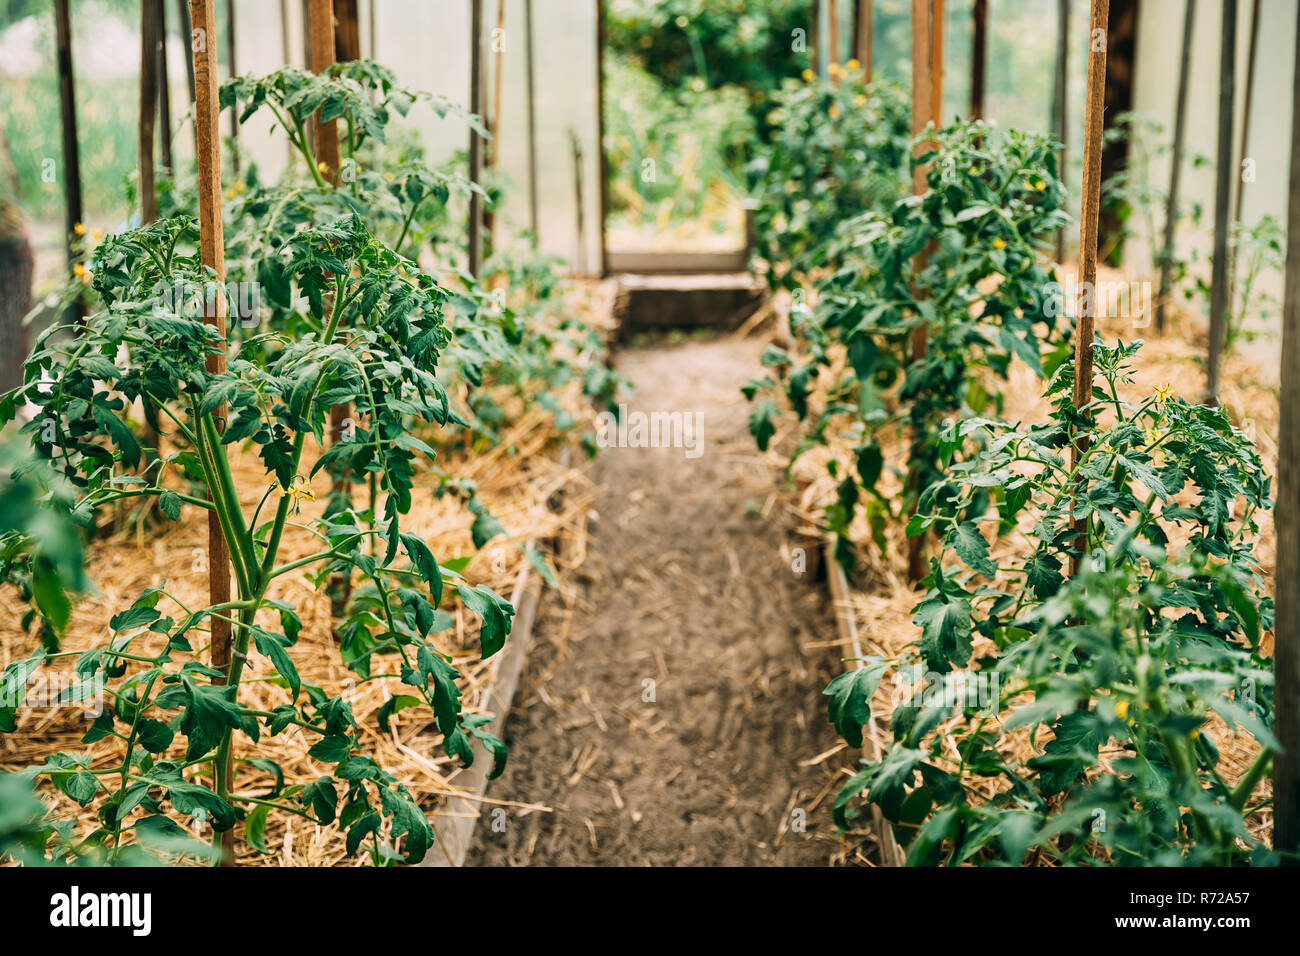 Tomaten Gemüse wachsen in der angehobenen Betten im Gemüsegarten oder Gewächshaus oder Gewächshaus. Stockfoto